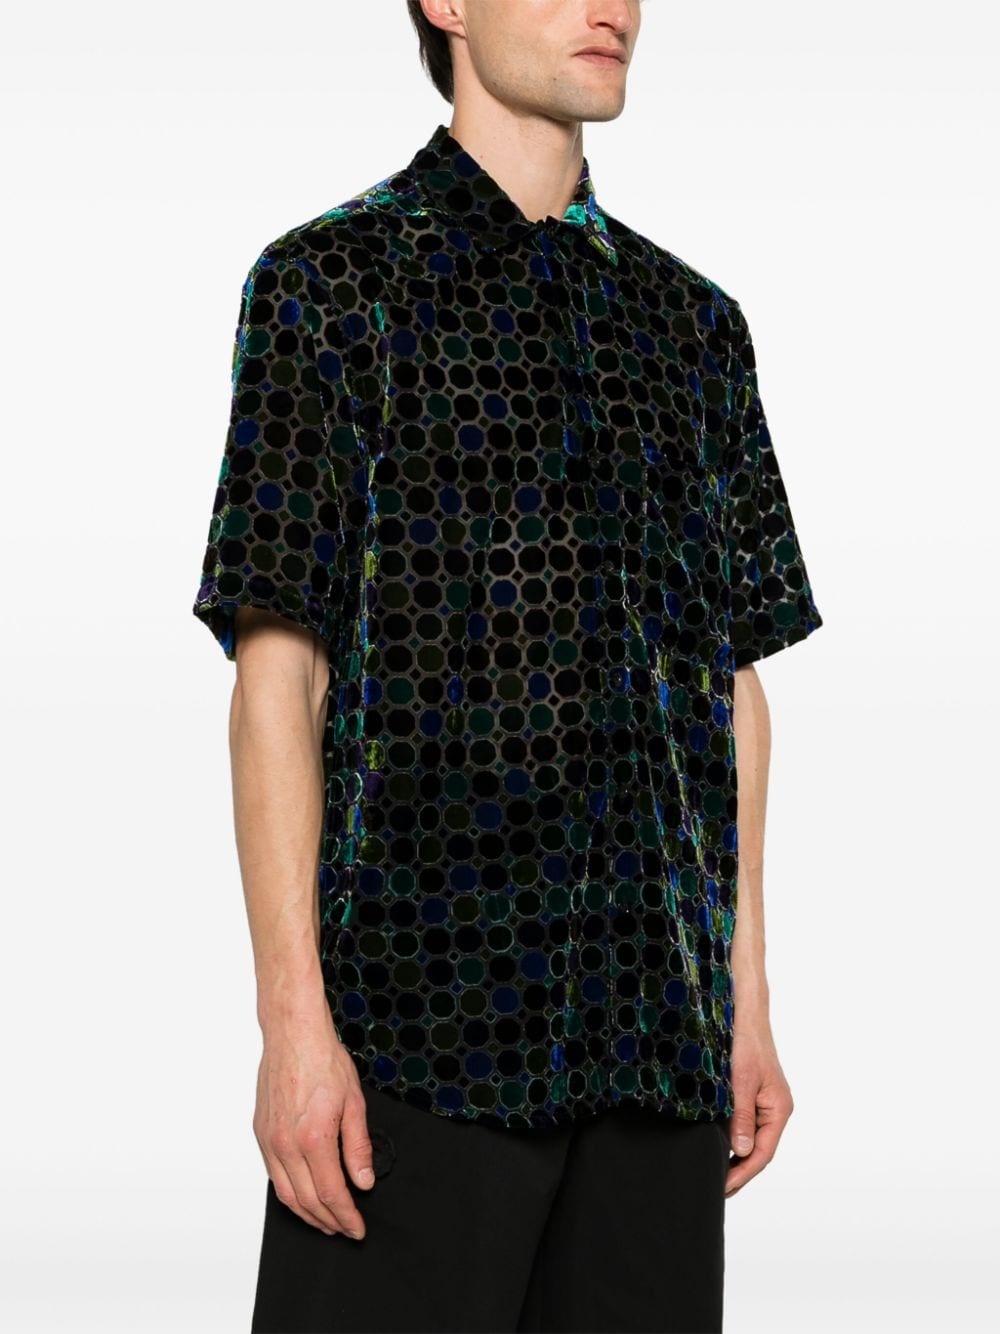 Stained Glass velvet shirt - 3